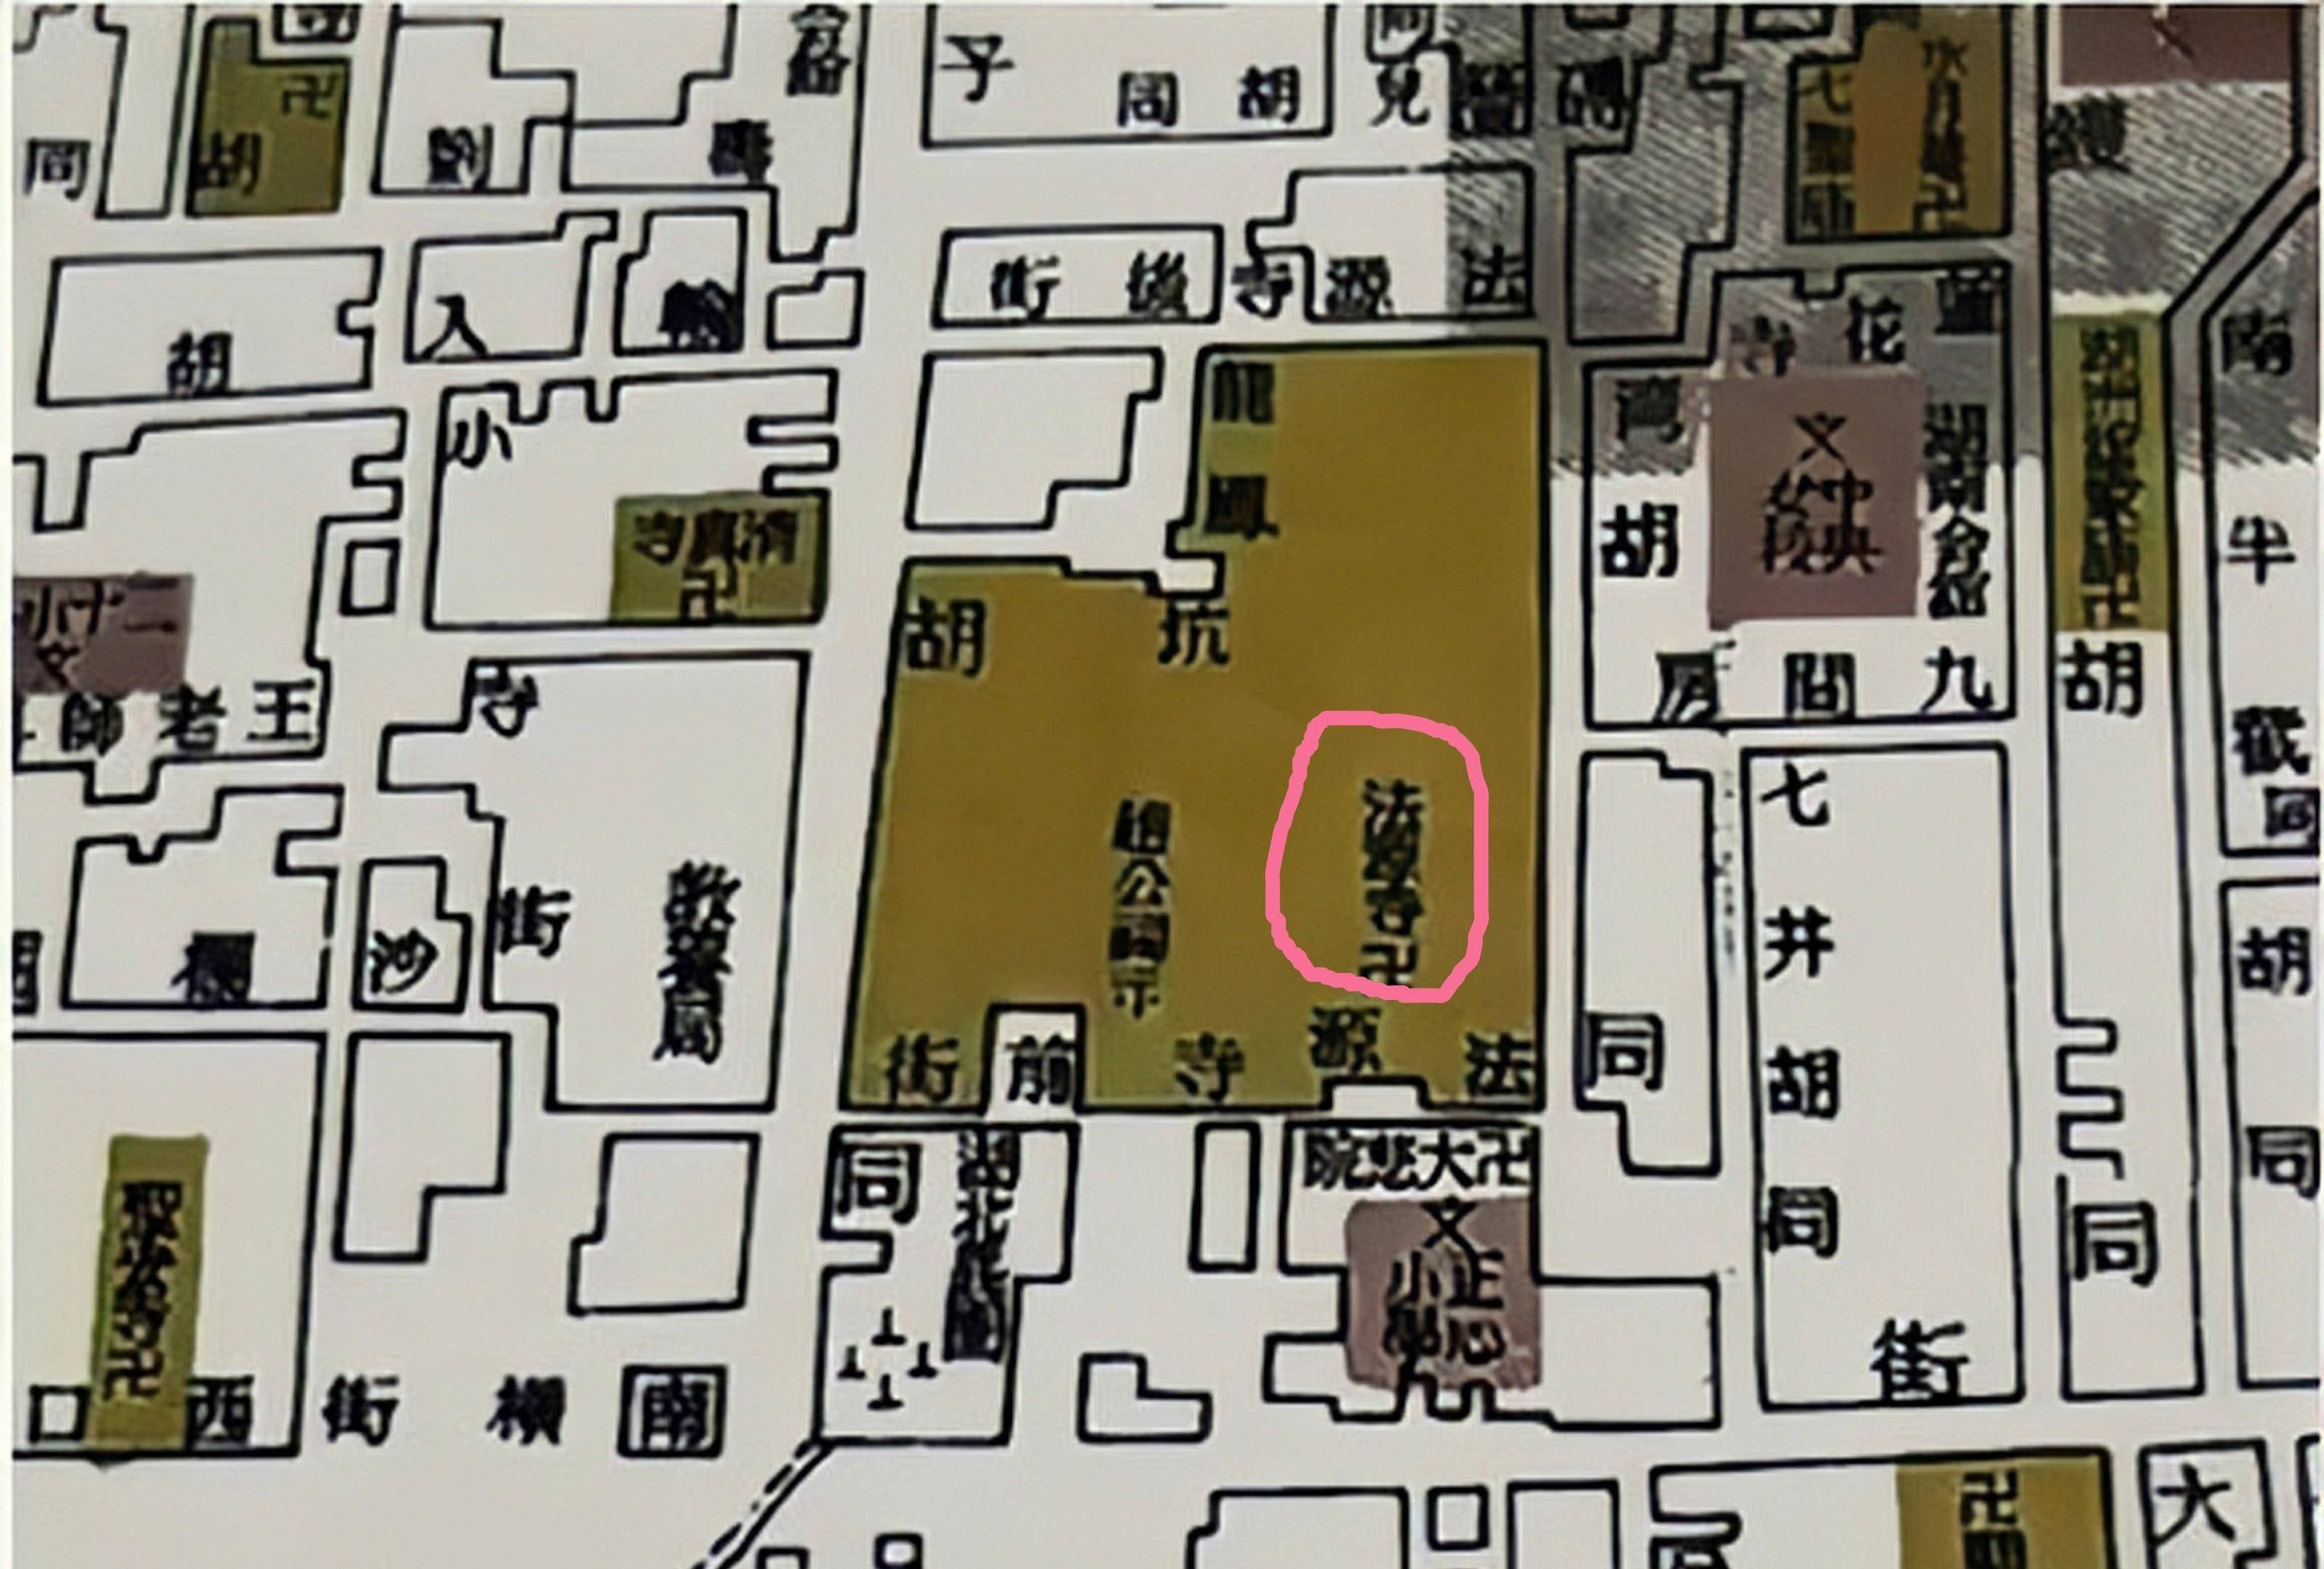 民国北京地图中的法源寺在孔府中还有一种极其特殊的仆人